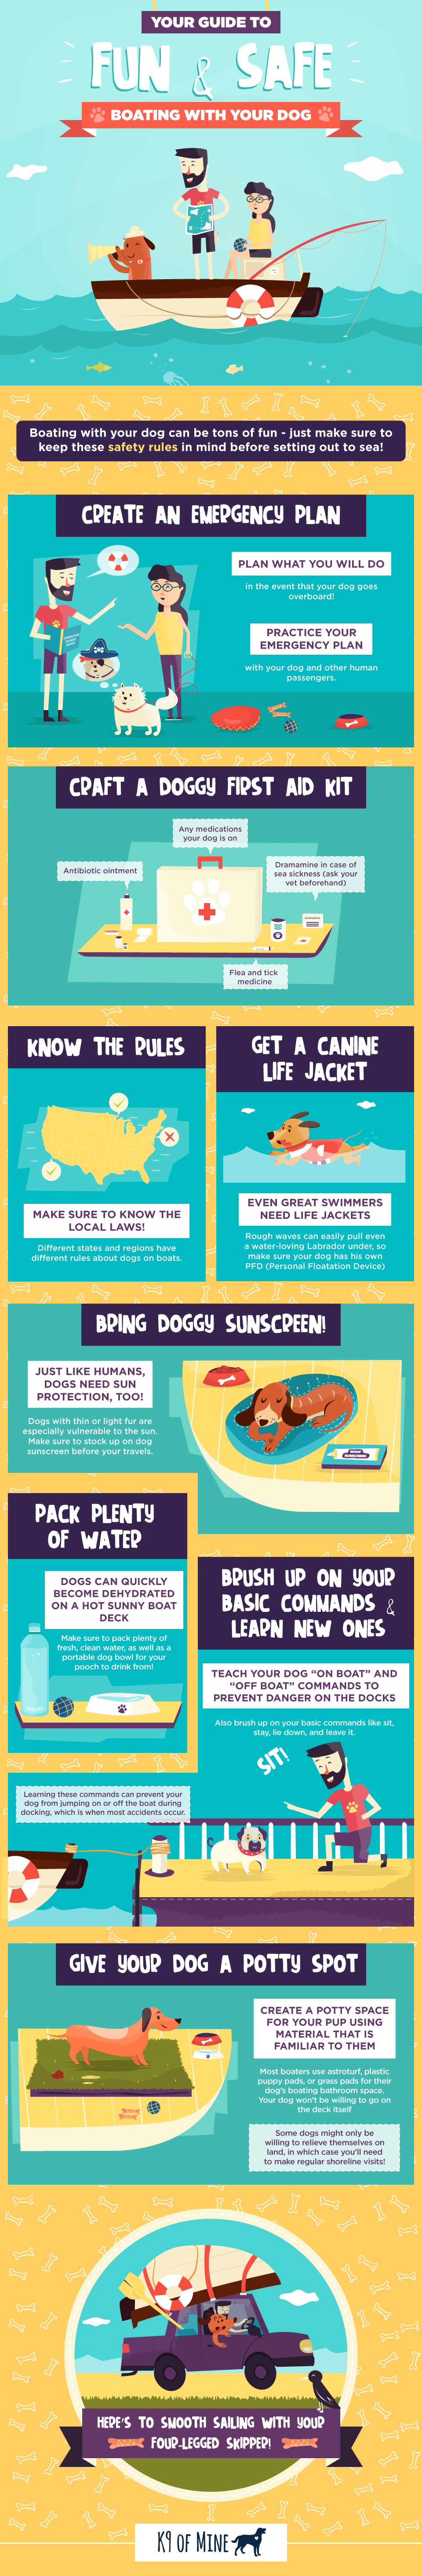 Sikkerhedstip til hundebådsejlads: Hvad skal man vide, før man tager ud på havet [Infographic]